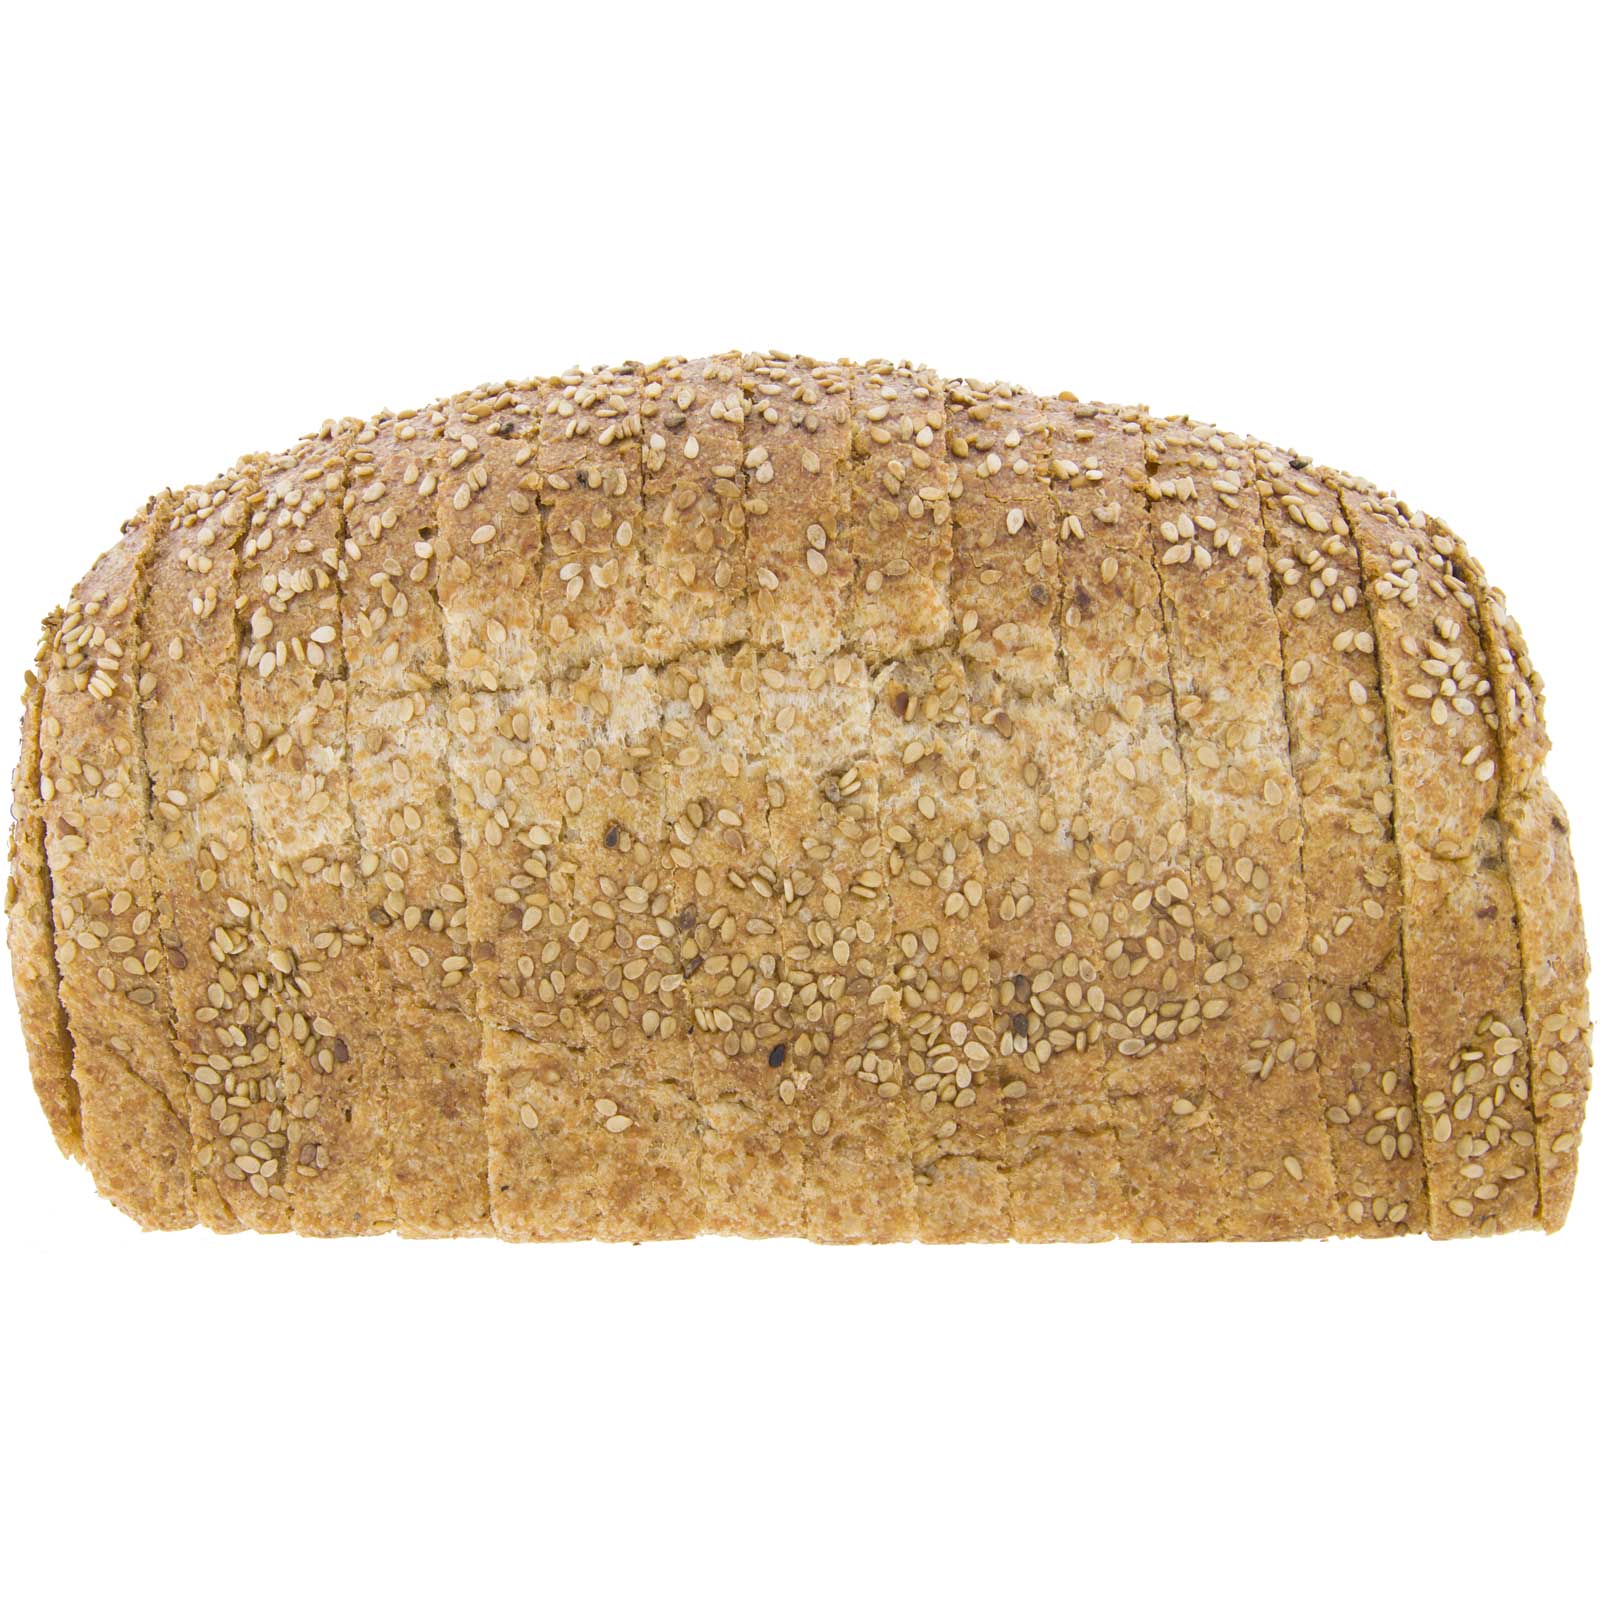 Full-length spell mold bread with ecological sesame 450g